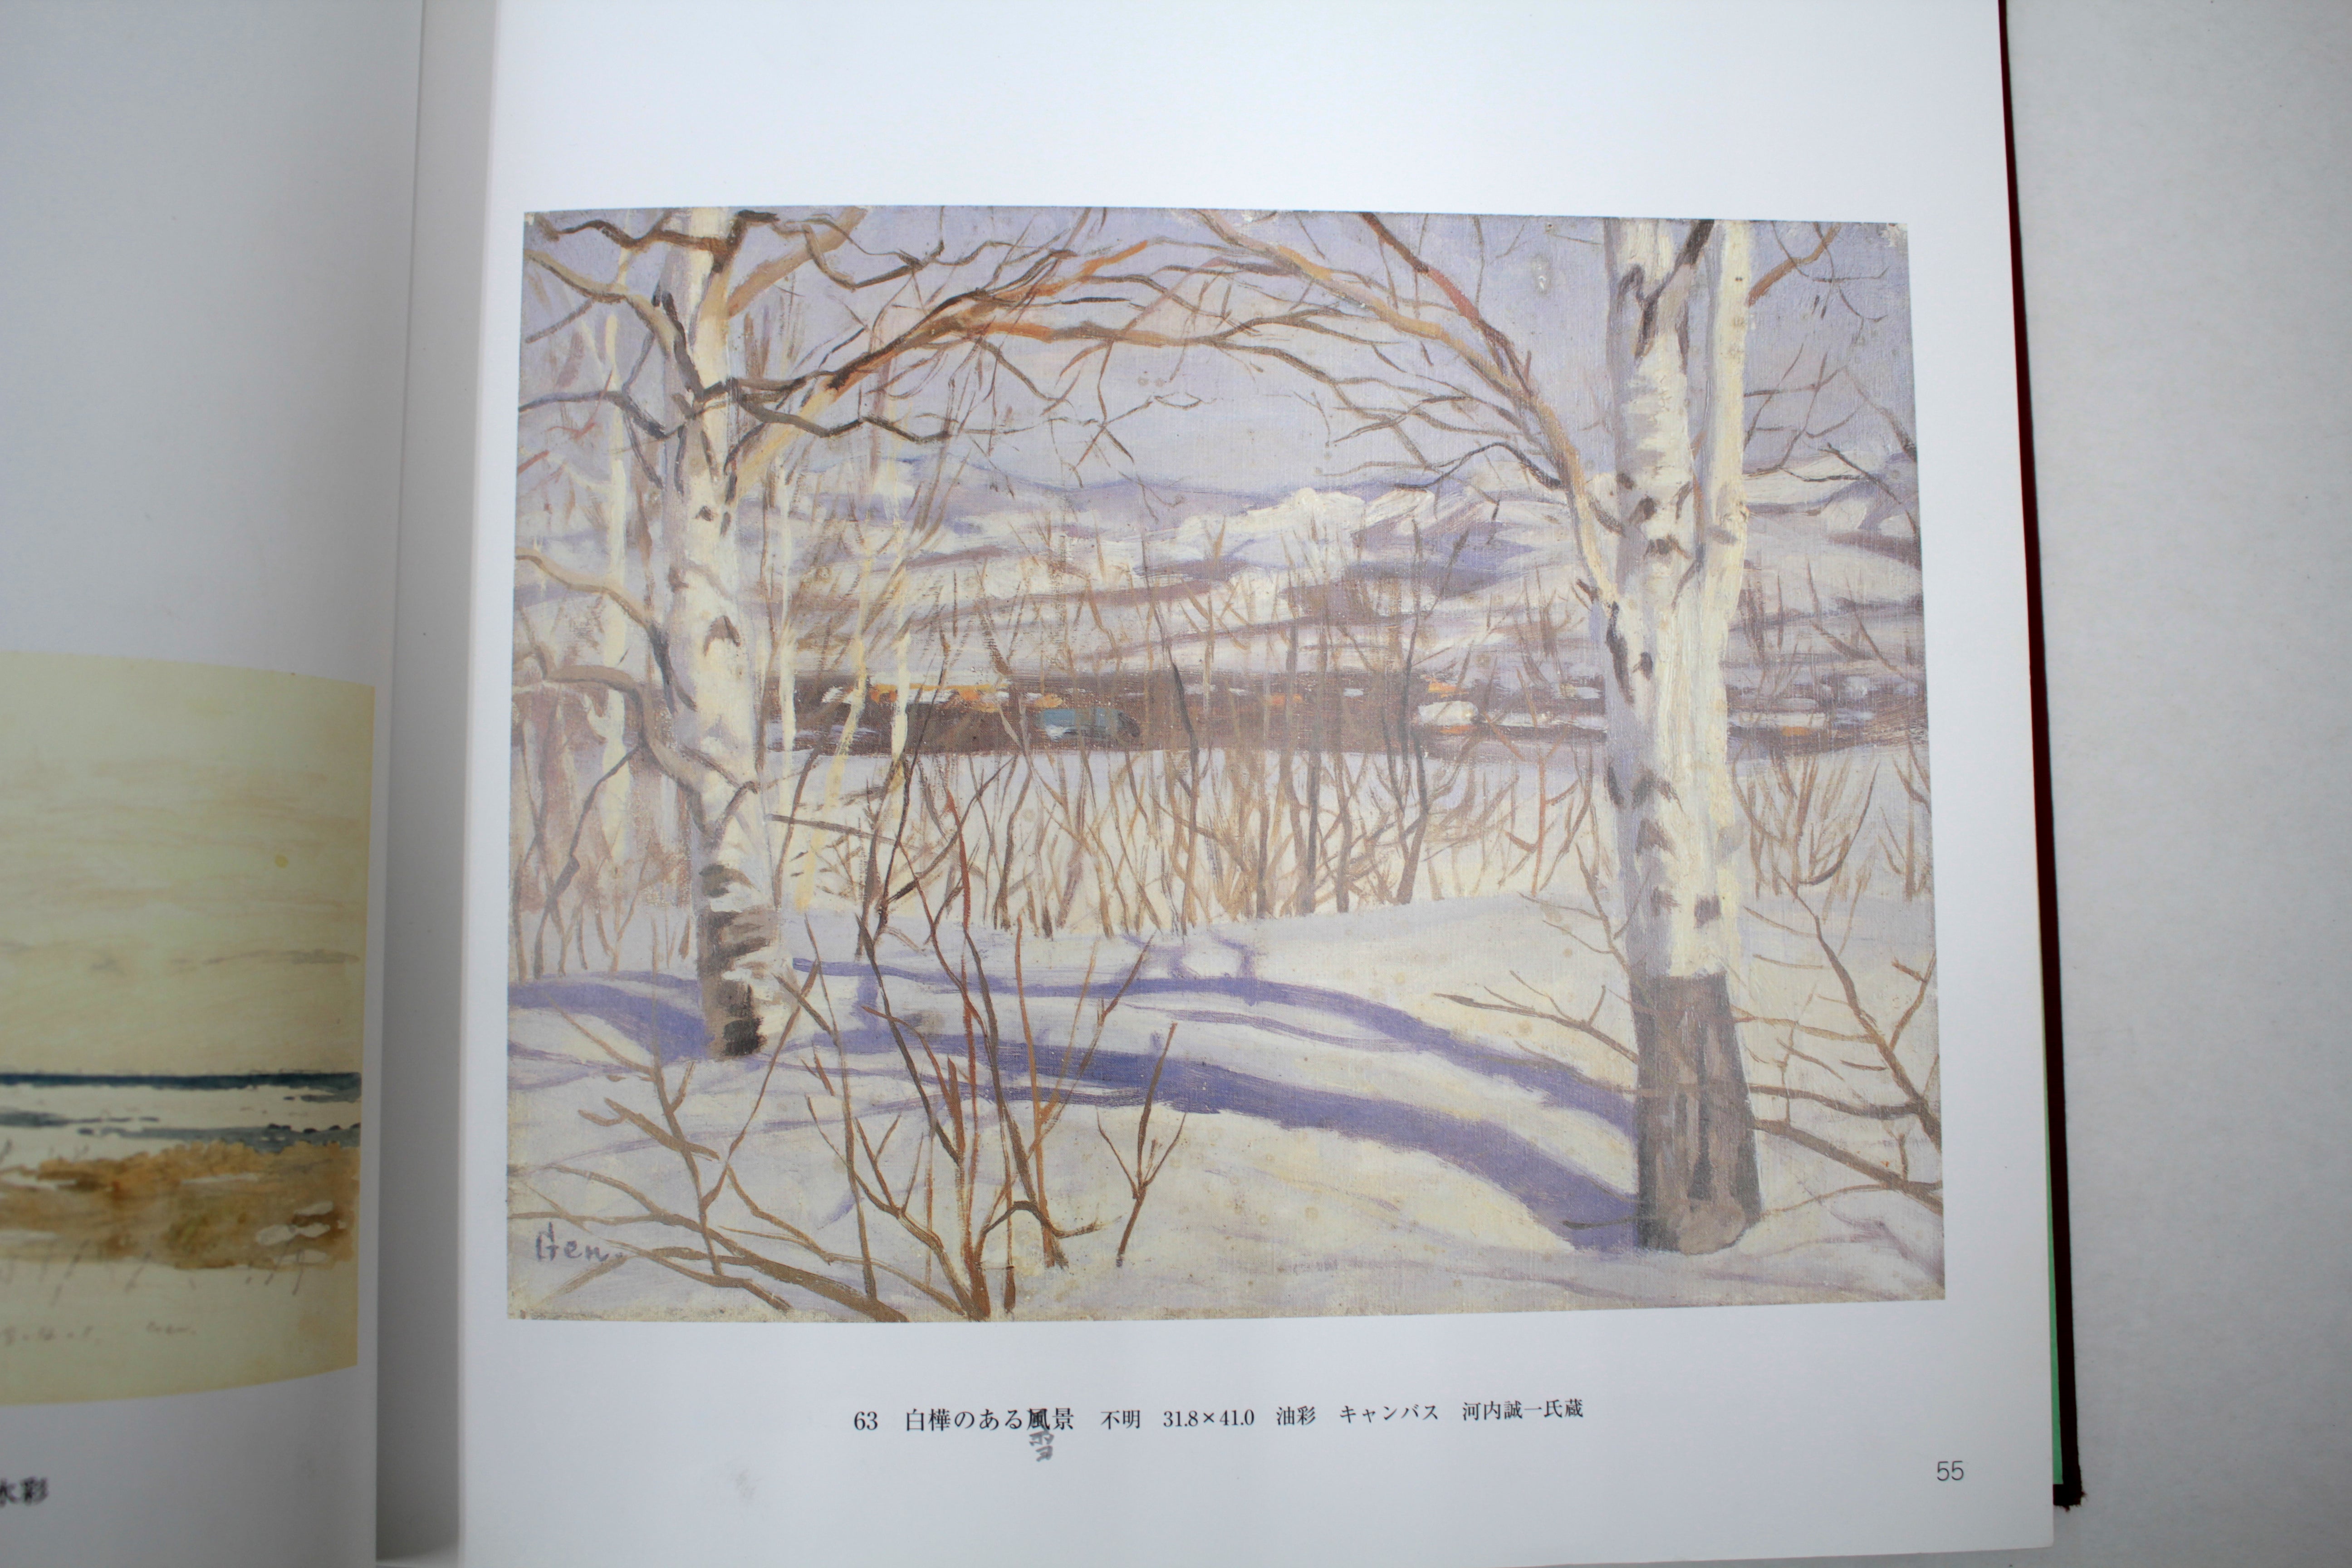 大月源二 『白樺のある雪景』 油彩画 - 北海道画廊